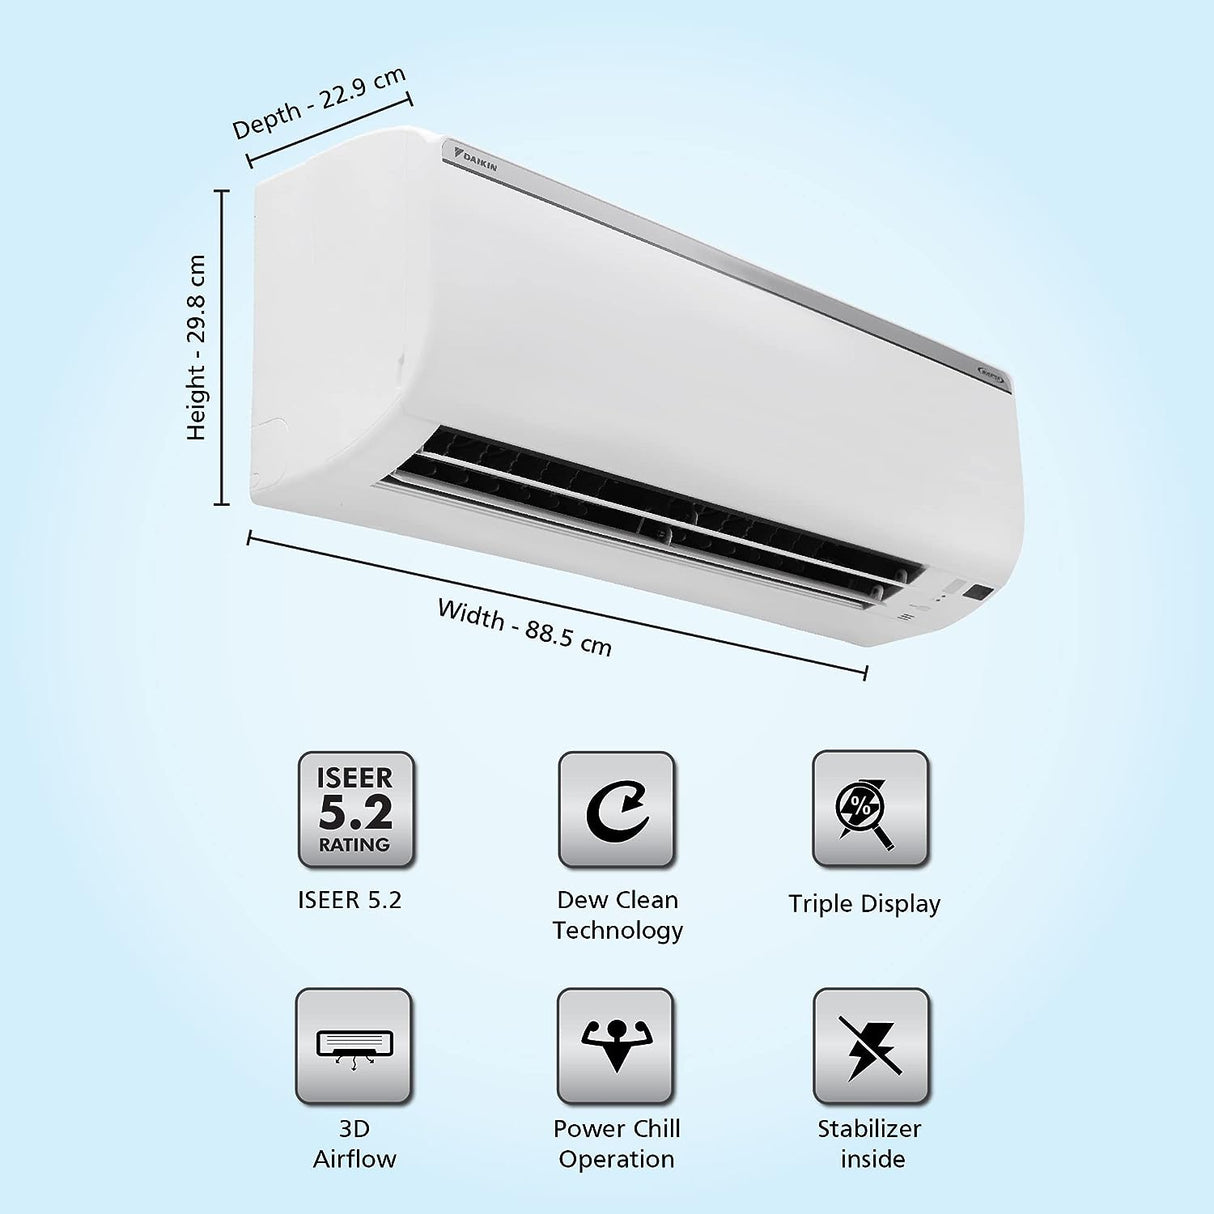 Best HVAC: Daikin 1.8T 5 Star Inverter Split AC - Copper, 2022 Model, White.